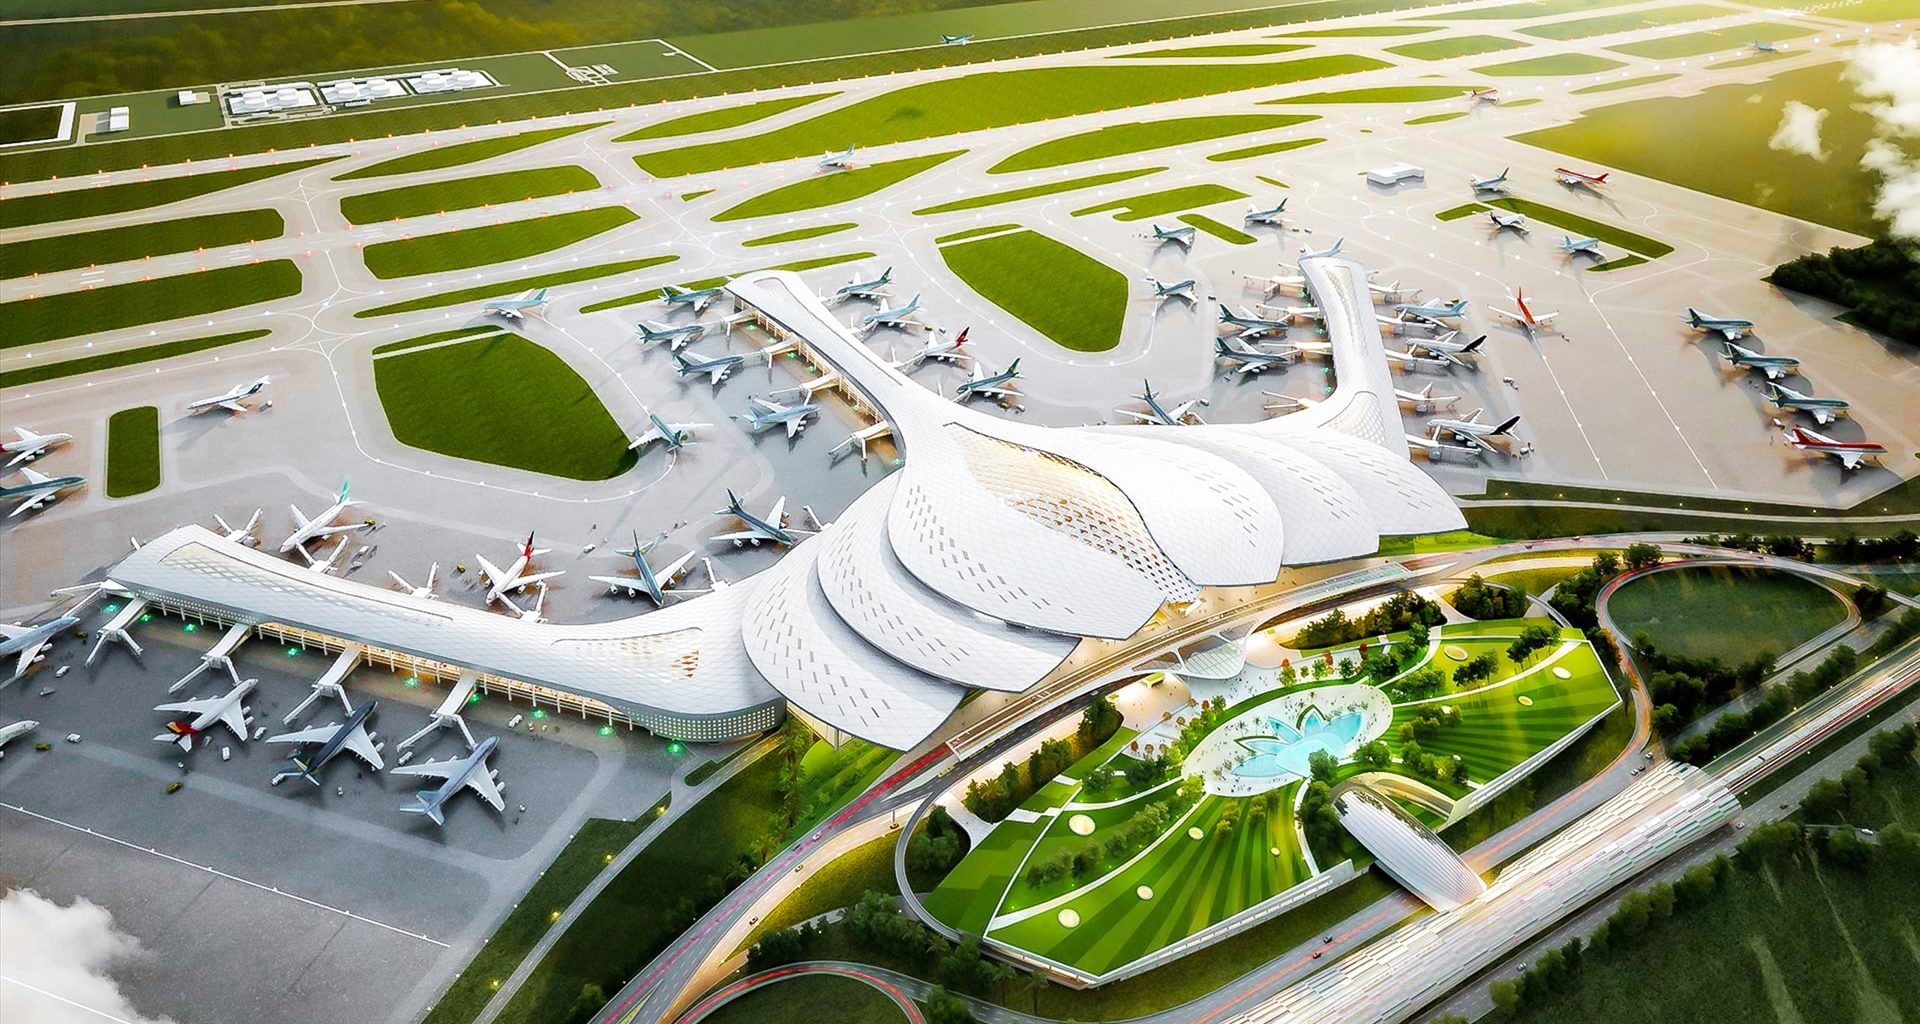 Quy mô "khủng" của sân bay quốc tế Long Thành - Top 16 sân bay được mong đợi nhất thế giới - 14